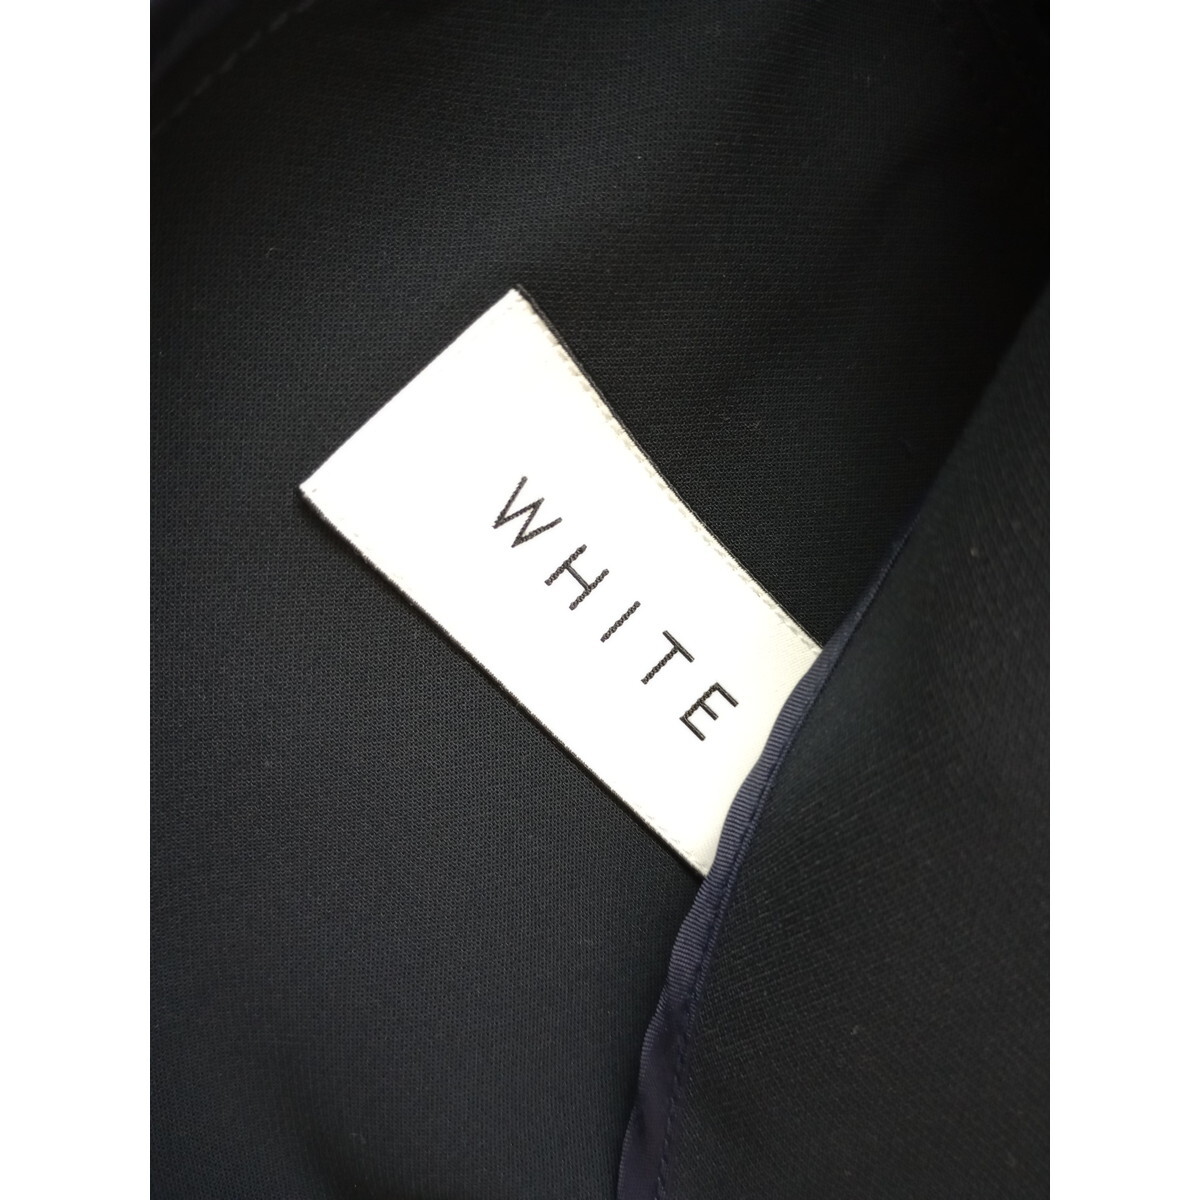 WHITE THE SUIT COMPANY ホワイト ザ・スーツカンパニー「賢い女性は美しい」ノーカラー ジャケット 36 ネイビー 紺 (50S+0928)の画像5